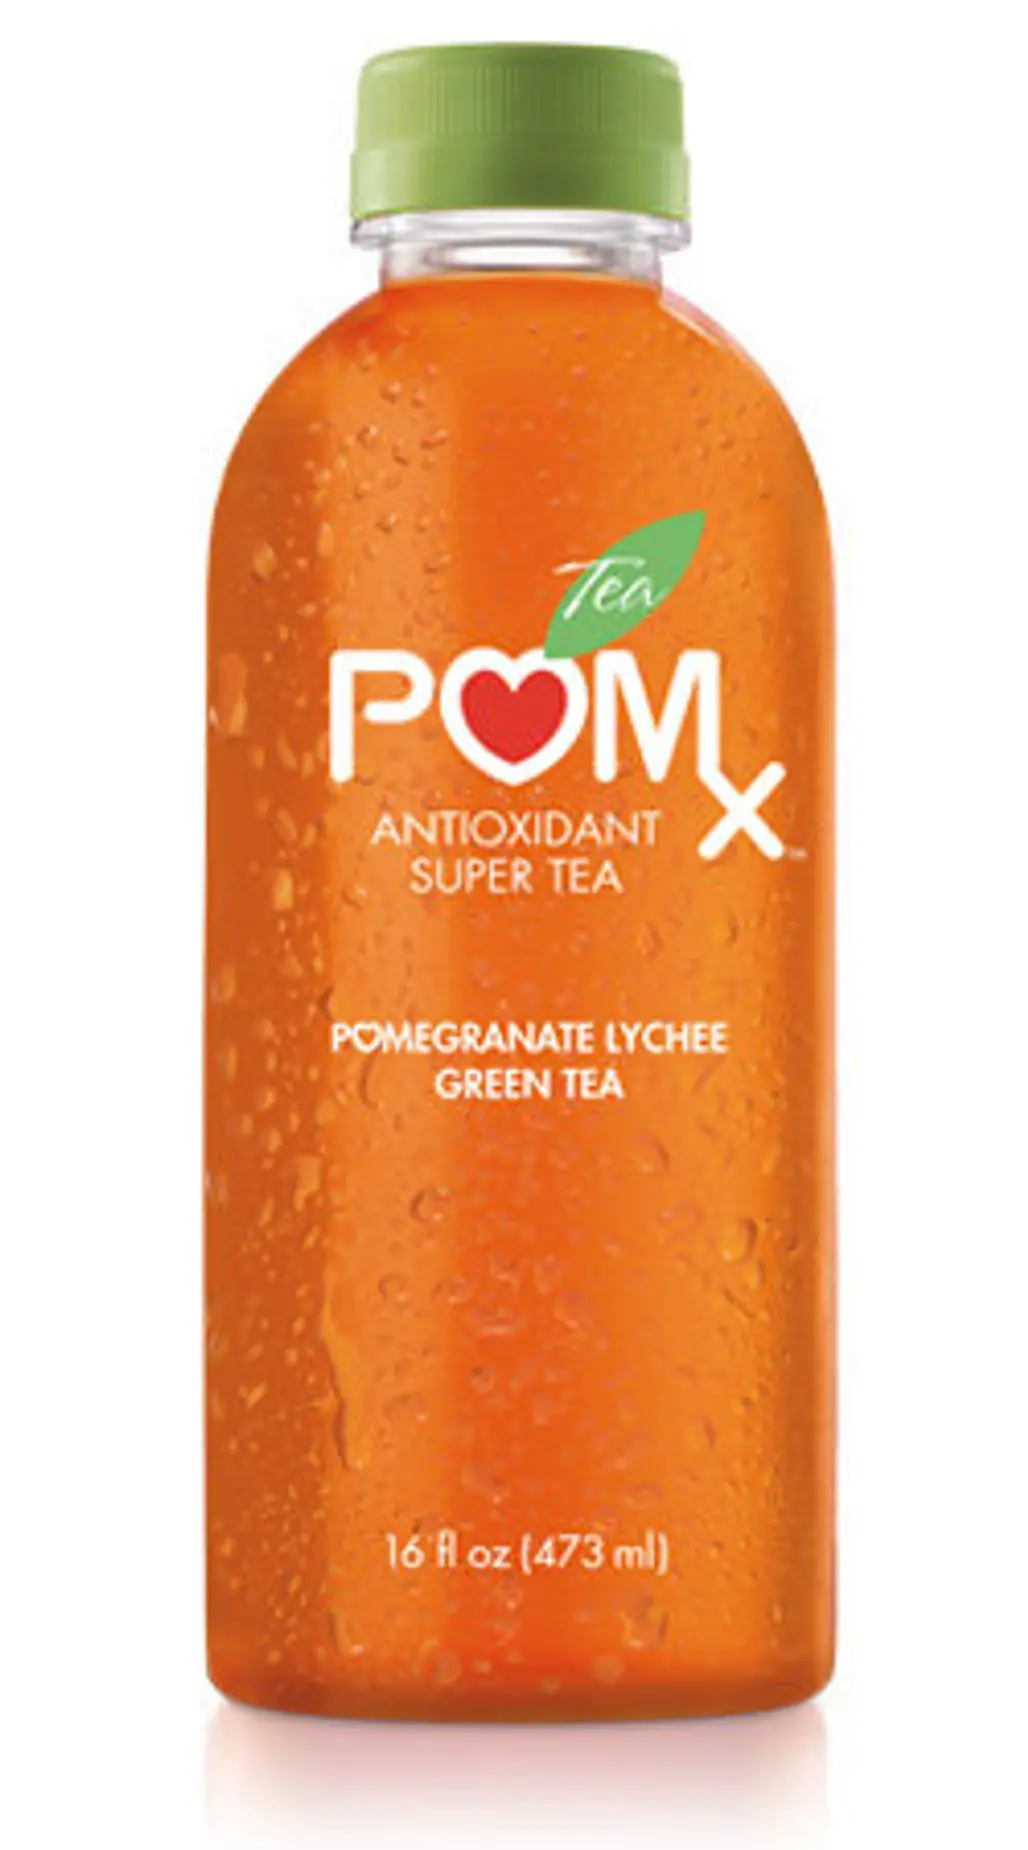 POM Pomegranate Lychee Green Tea